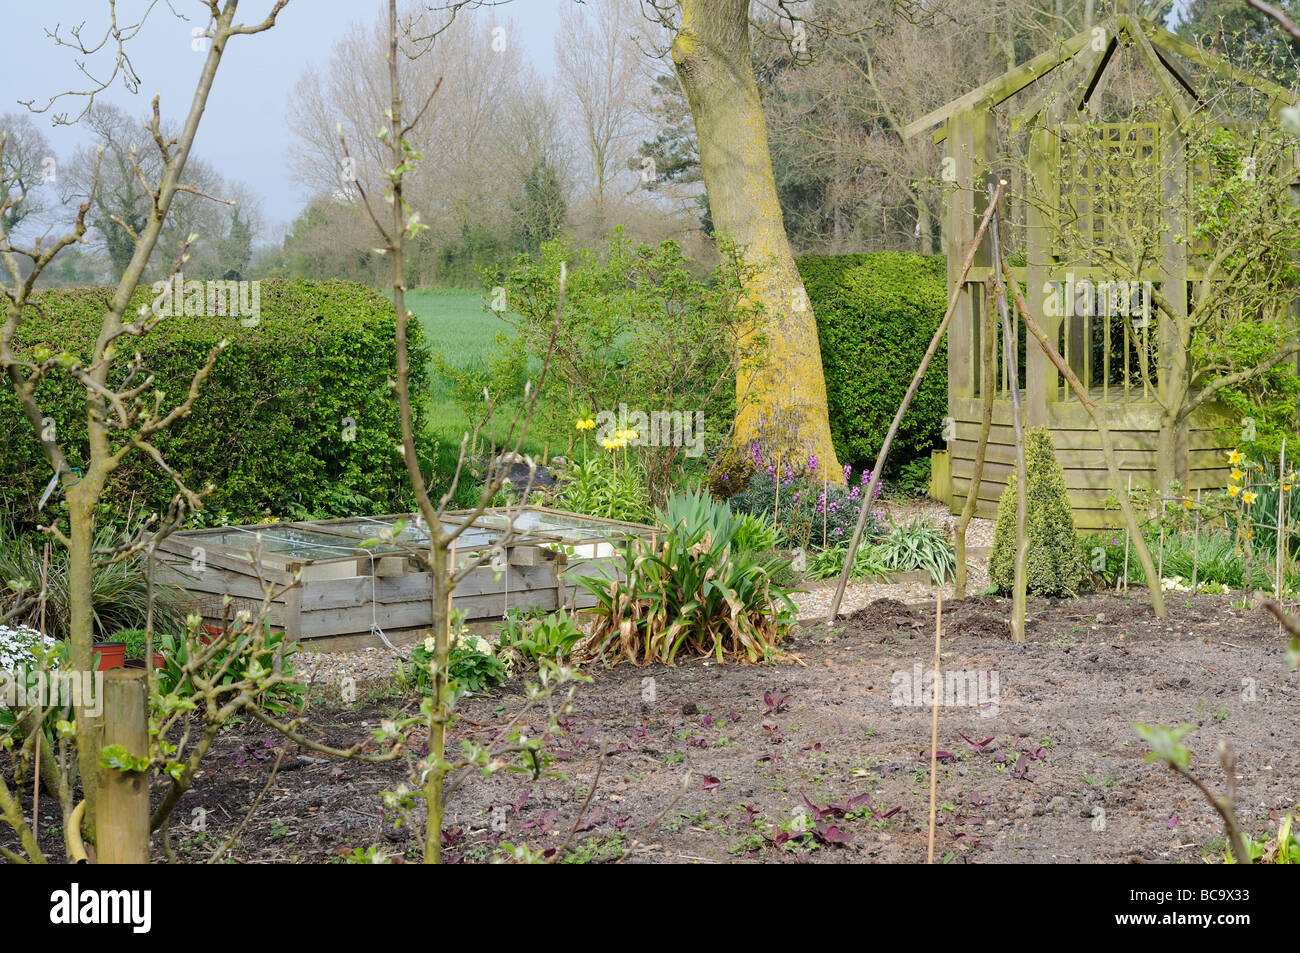 Vista general de una primavera jardín con cenador cajonera fría, árboles frutales y campo lejano Reino Unido Abril Foto de stock